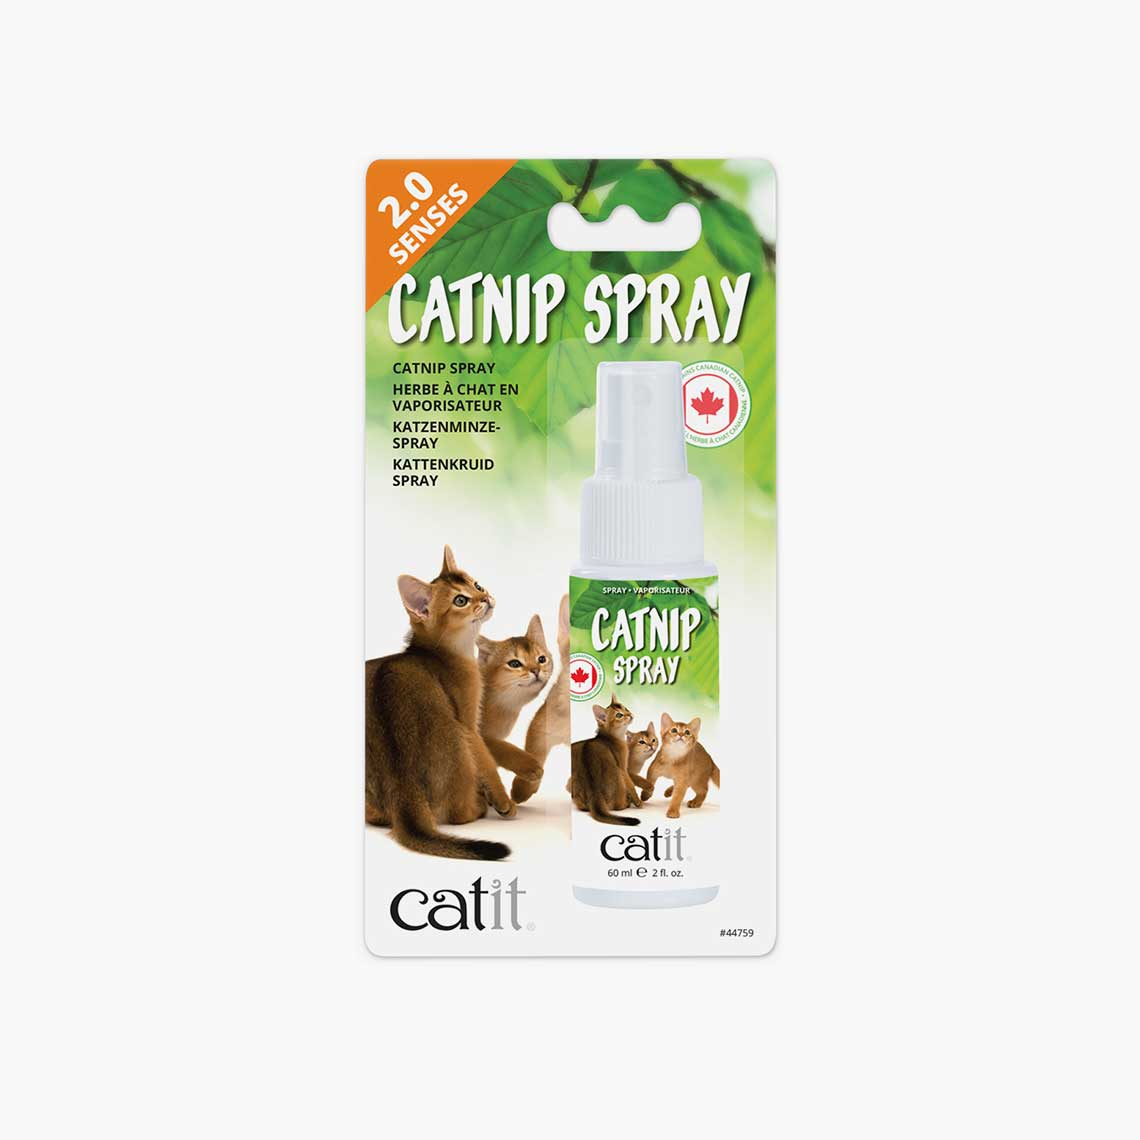 Katzenminzen Spray Catit 2.0